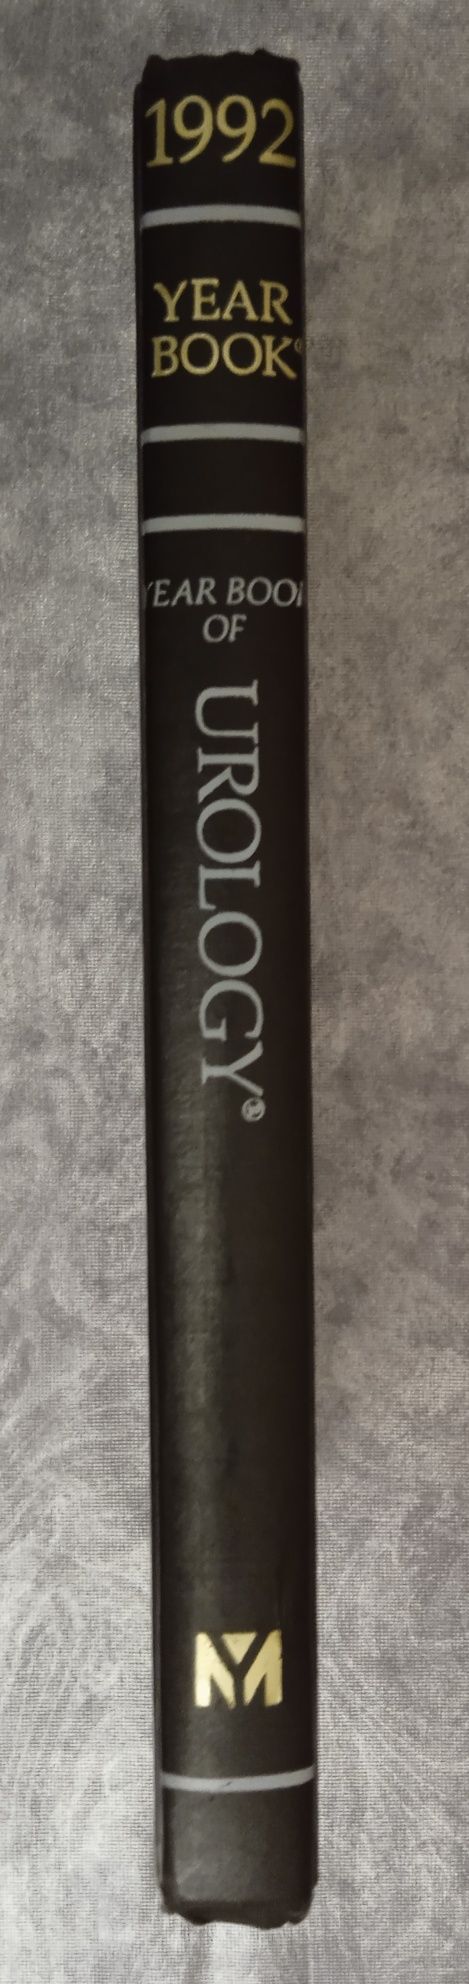 Учебник урологии на английском языке Year Book of Urology 1992